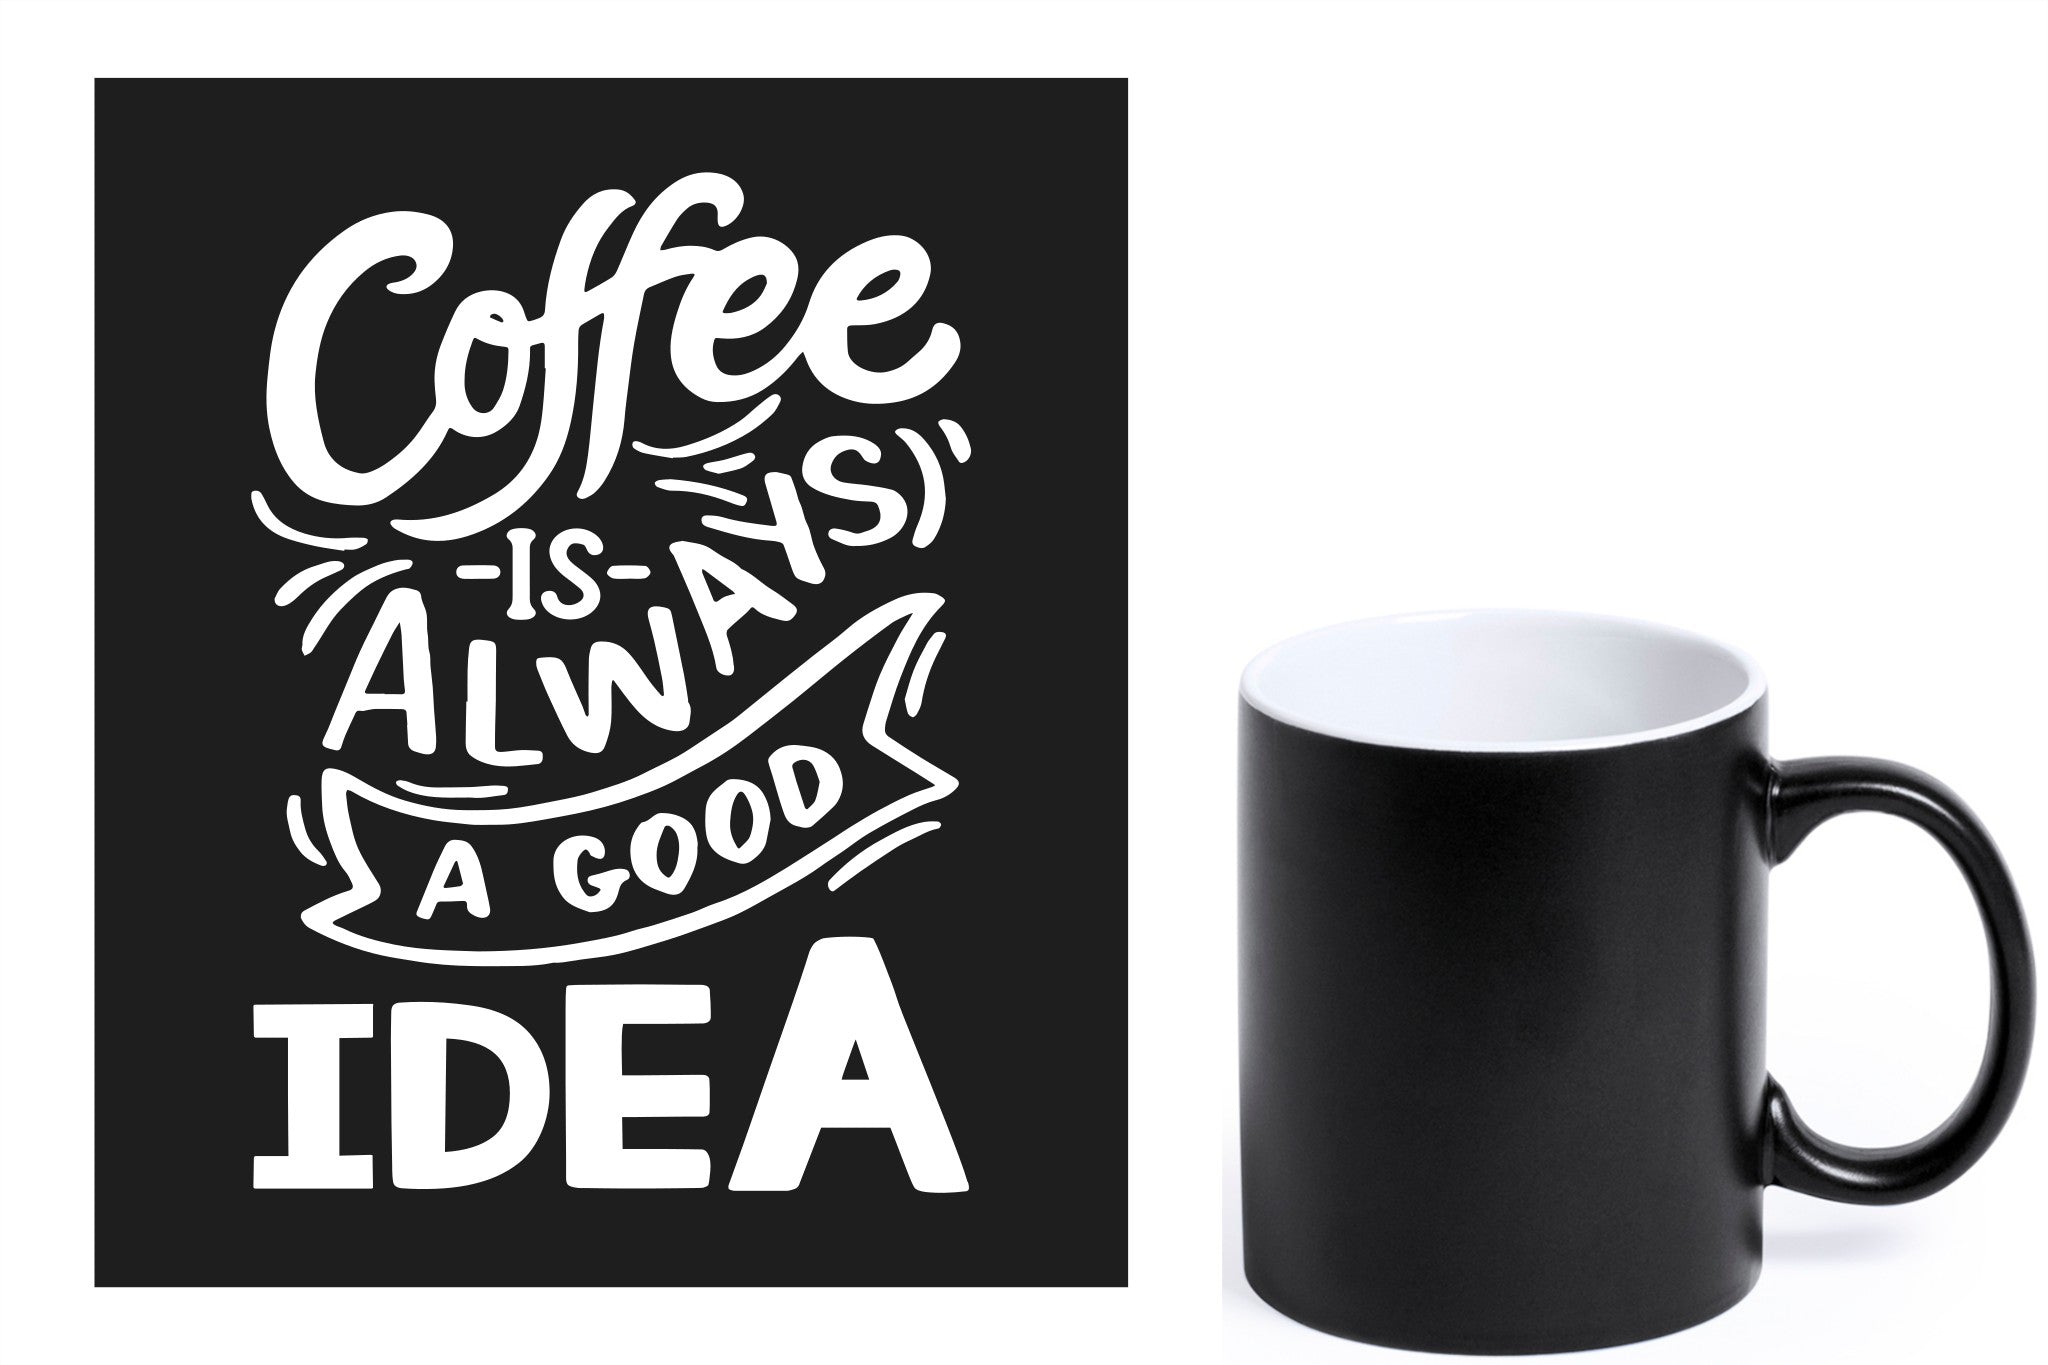 zwarte keramische mok met witte gravure  'Coffee is always a good idea'.